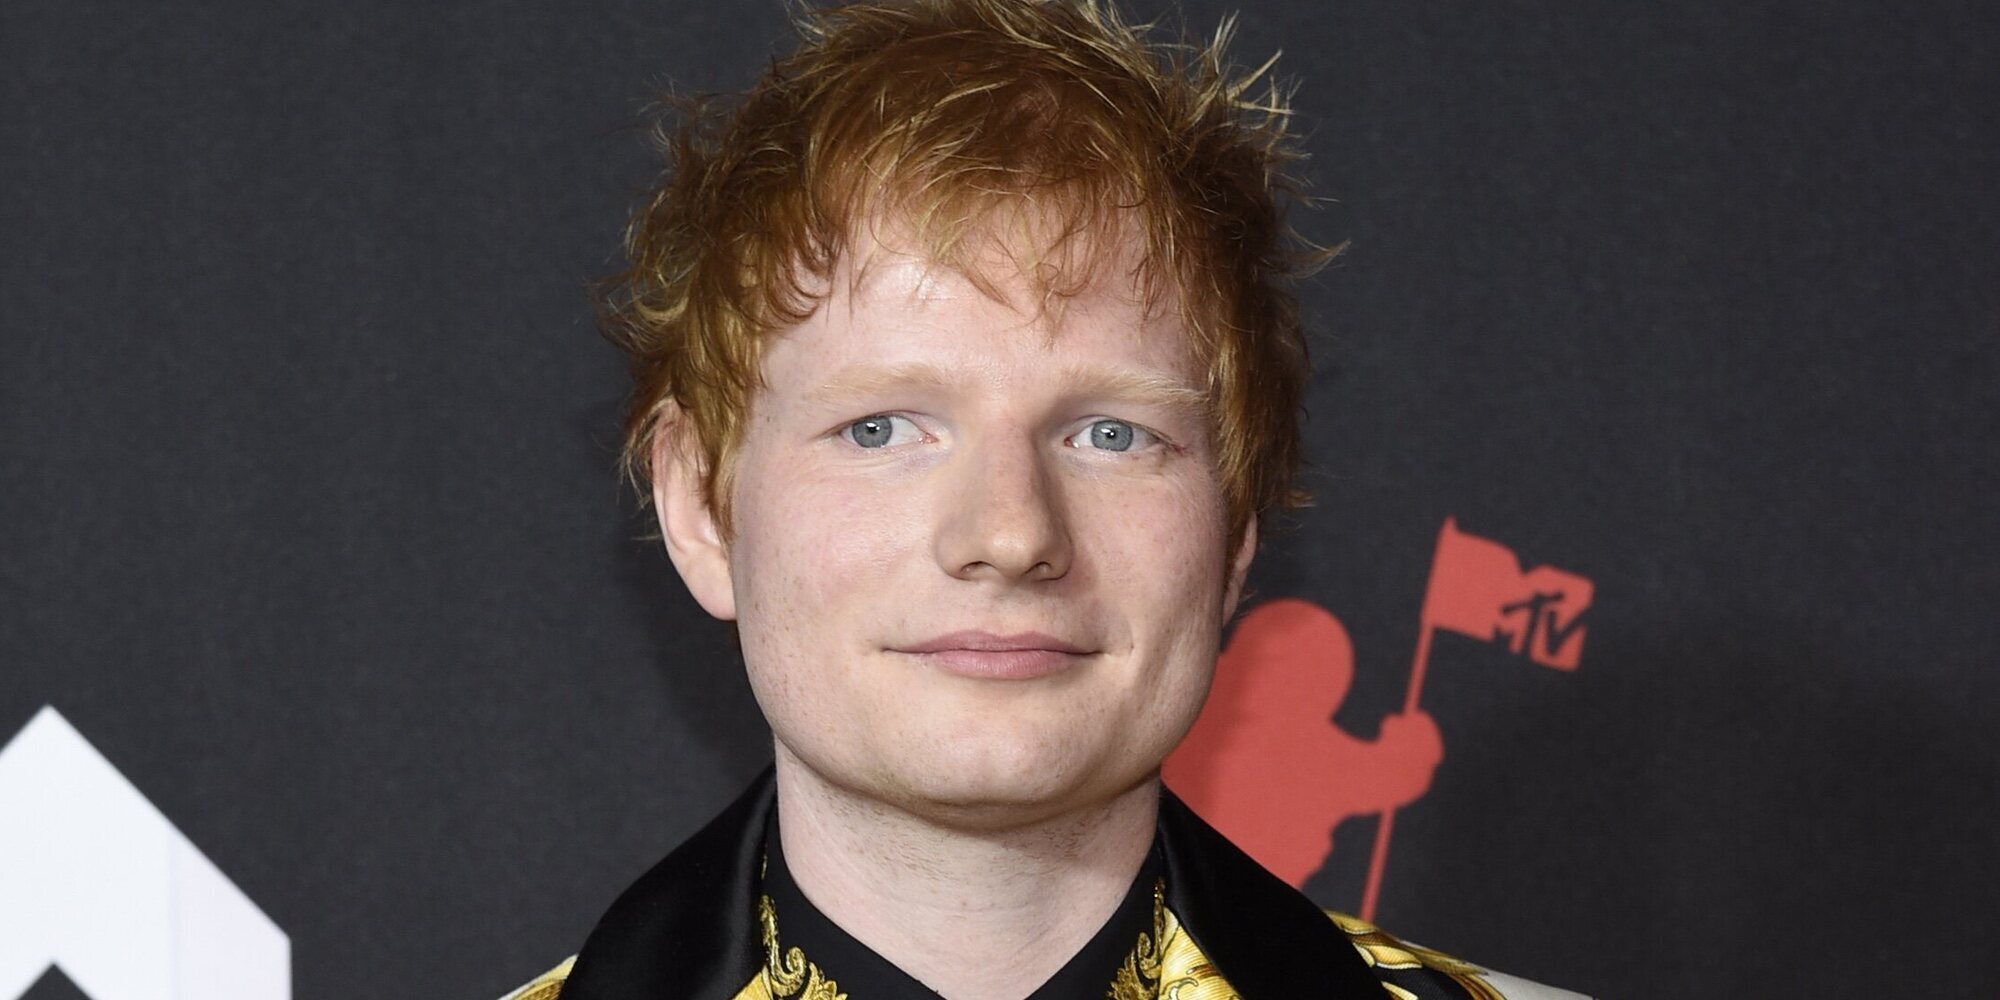 Ed Sheeran revela, al anunciar el lanzamiento de su disco, que a su mujer le diagnosticaron un tumor estando embarazada